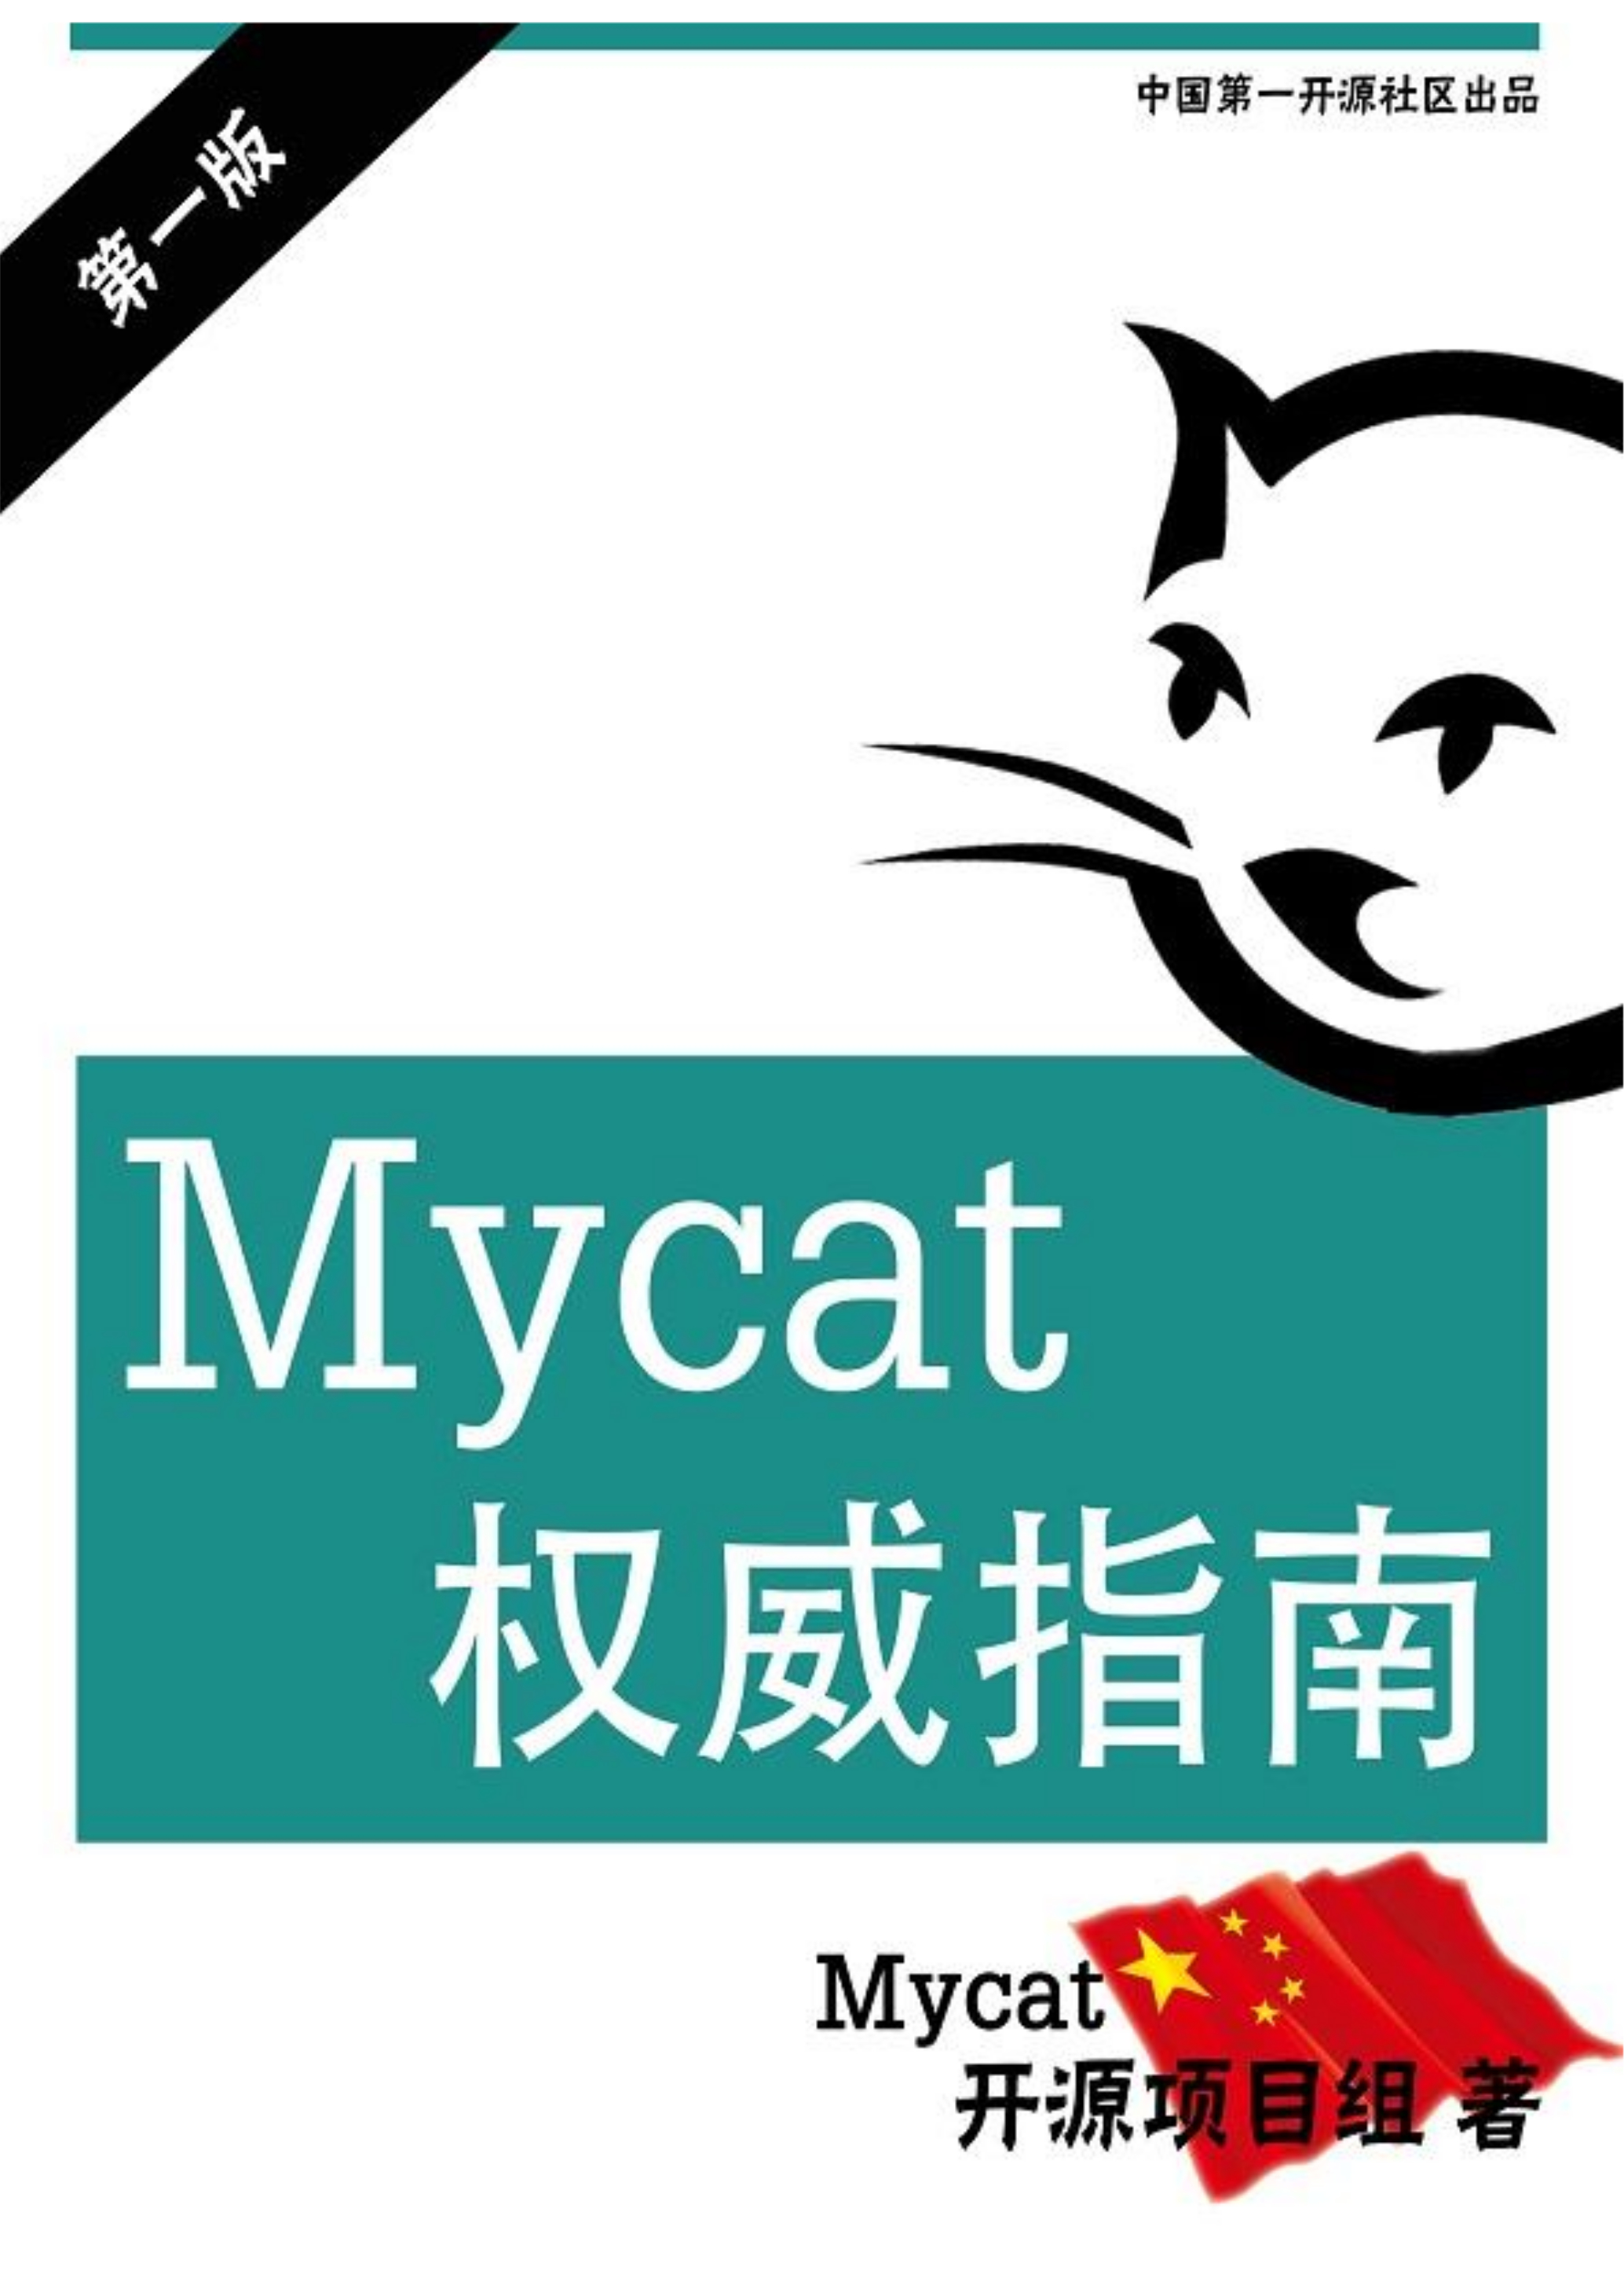 Mycat_V1.6.0 封面